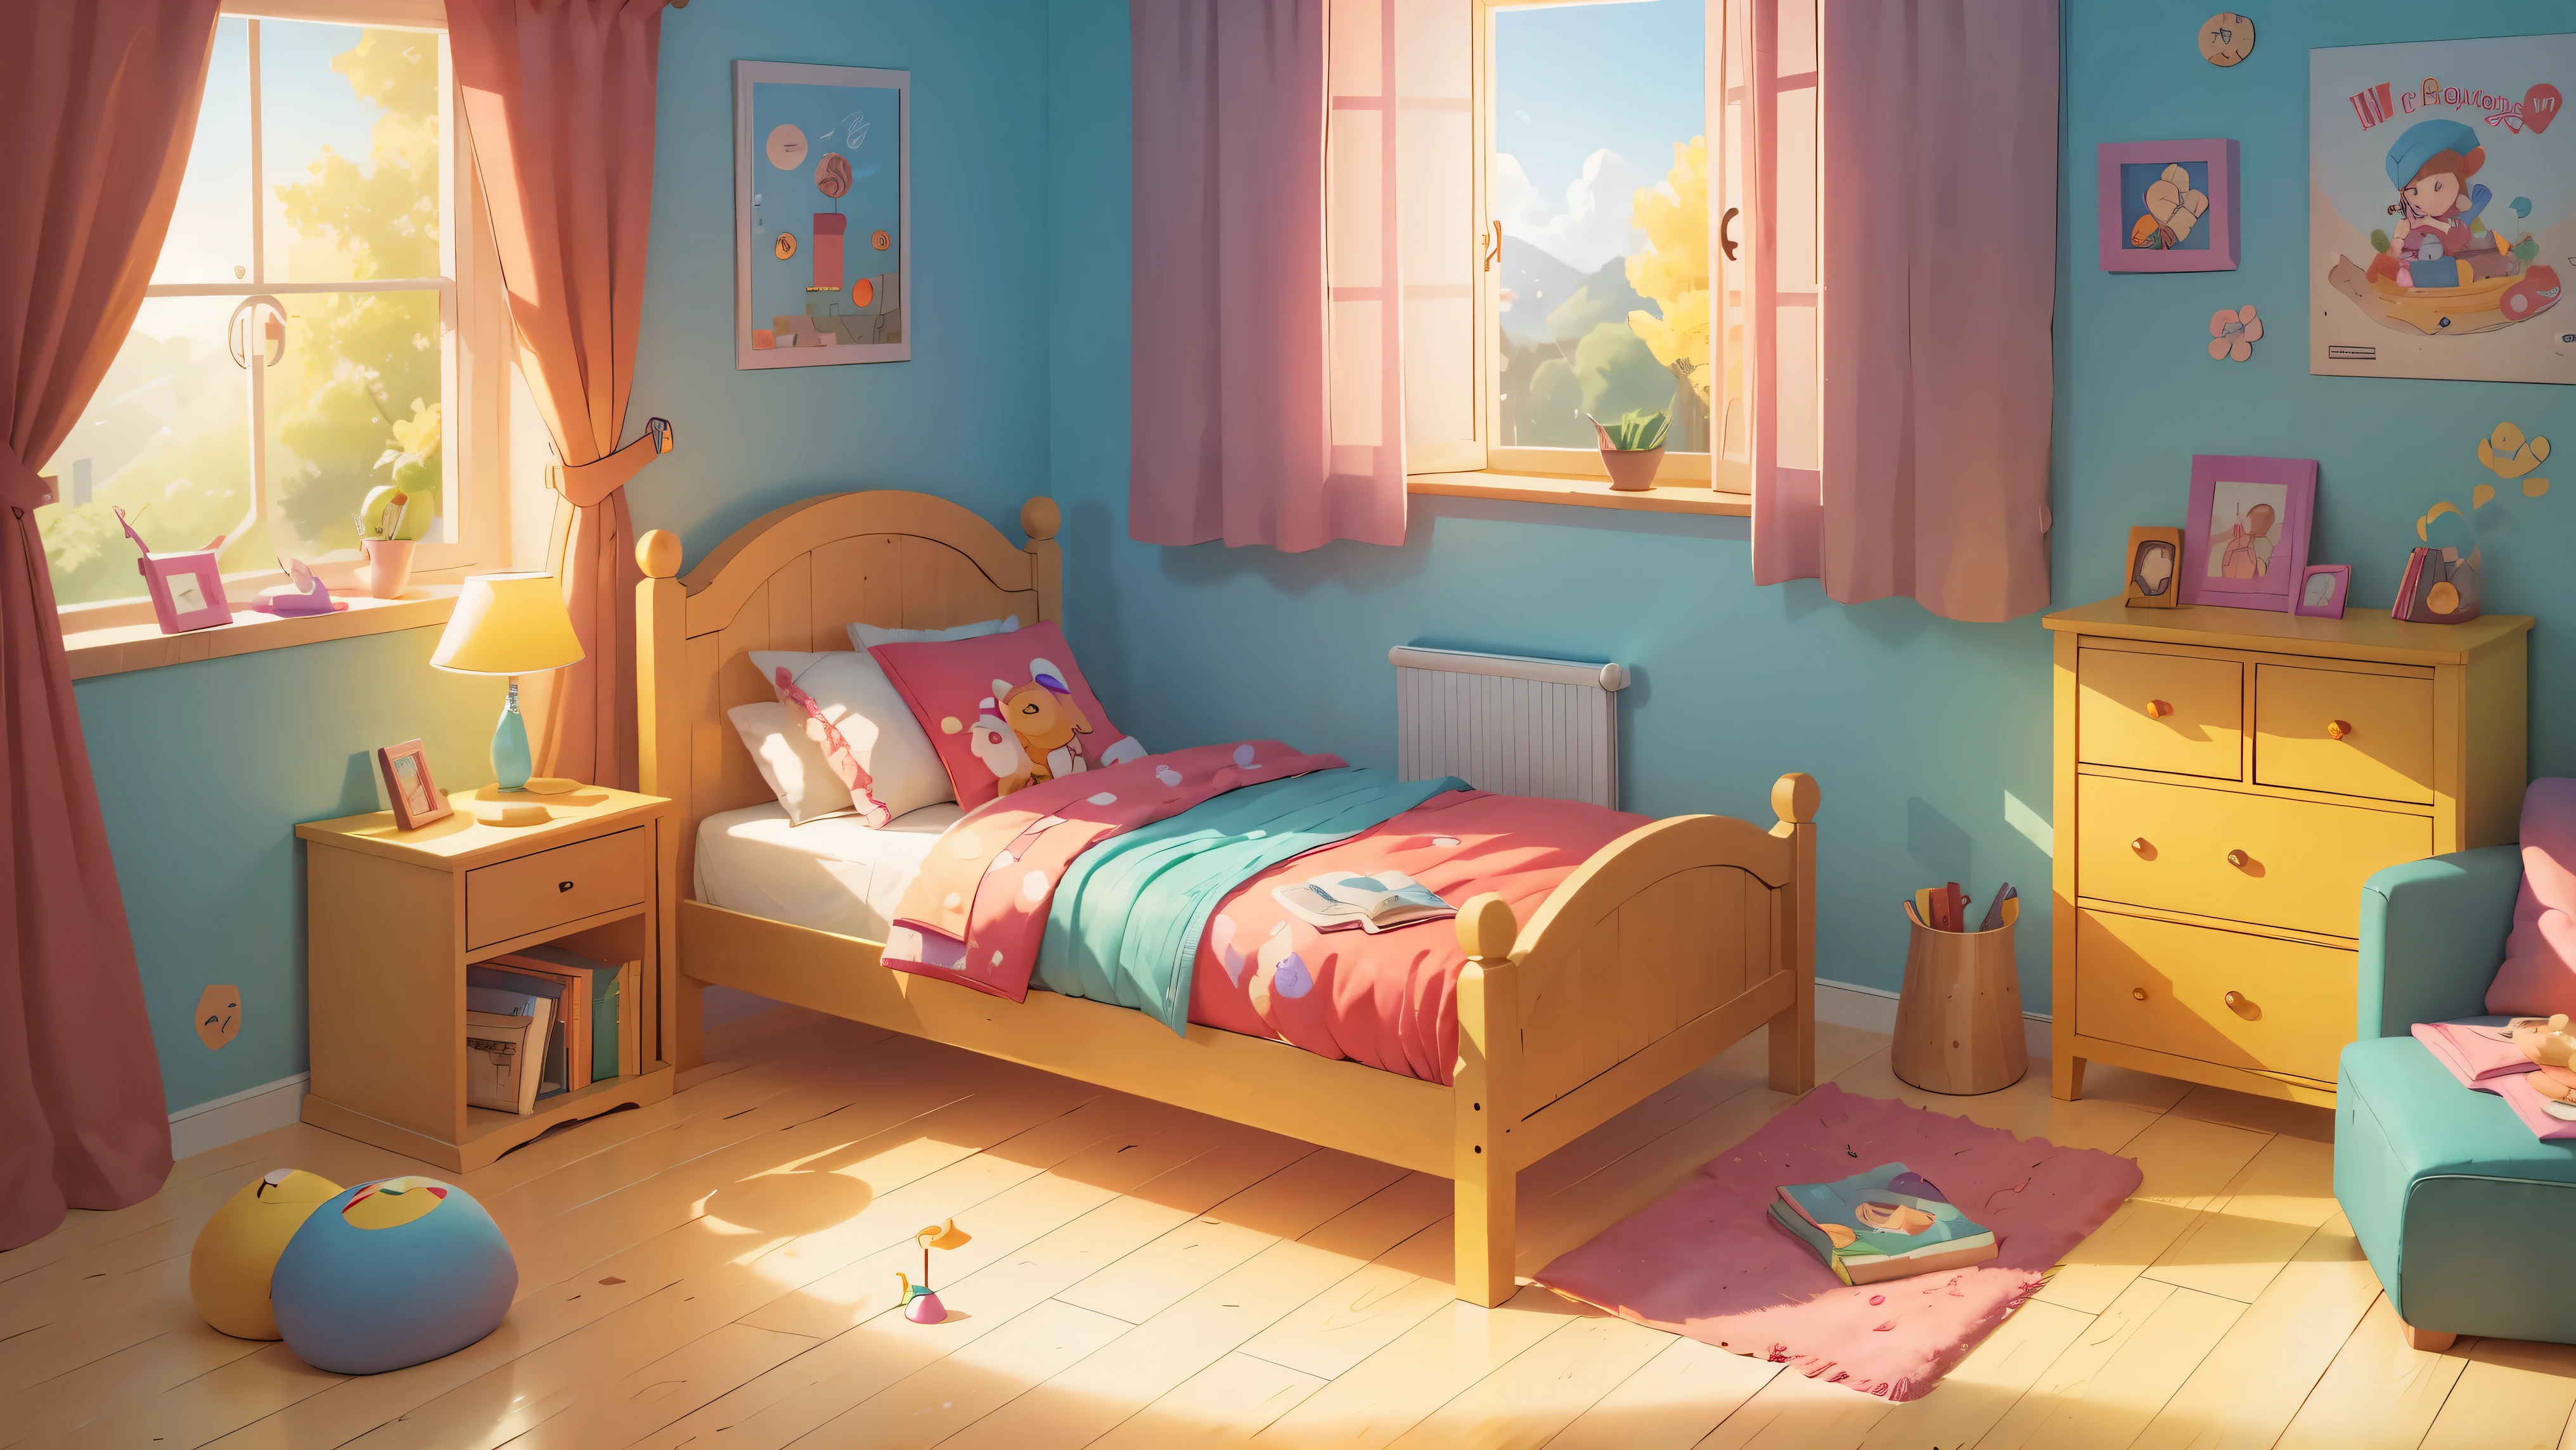 ((明亮的)), (rich 明亮的 colors), 卡通兒童房位於一棟木屋內，有床和玩具, a 明亮的 sunny day, 明亮的 curtains on a round window, children's 明亮的 posters on wooden walls, 兒童櫃子，裡面有書和玩具, 絨毛玩具, 舒適, 細緻的背景藝術品傑作, 手機遊戲背景, 風景藝術詳細, 詳細的遊戲藝術, 8K